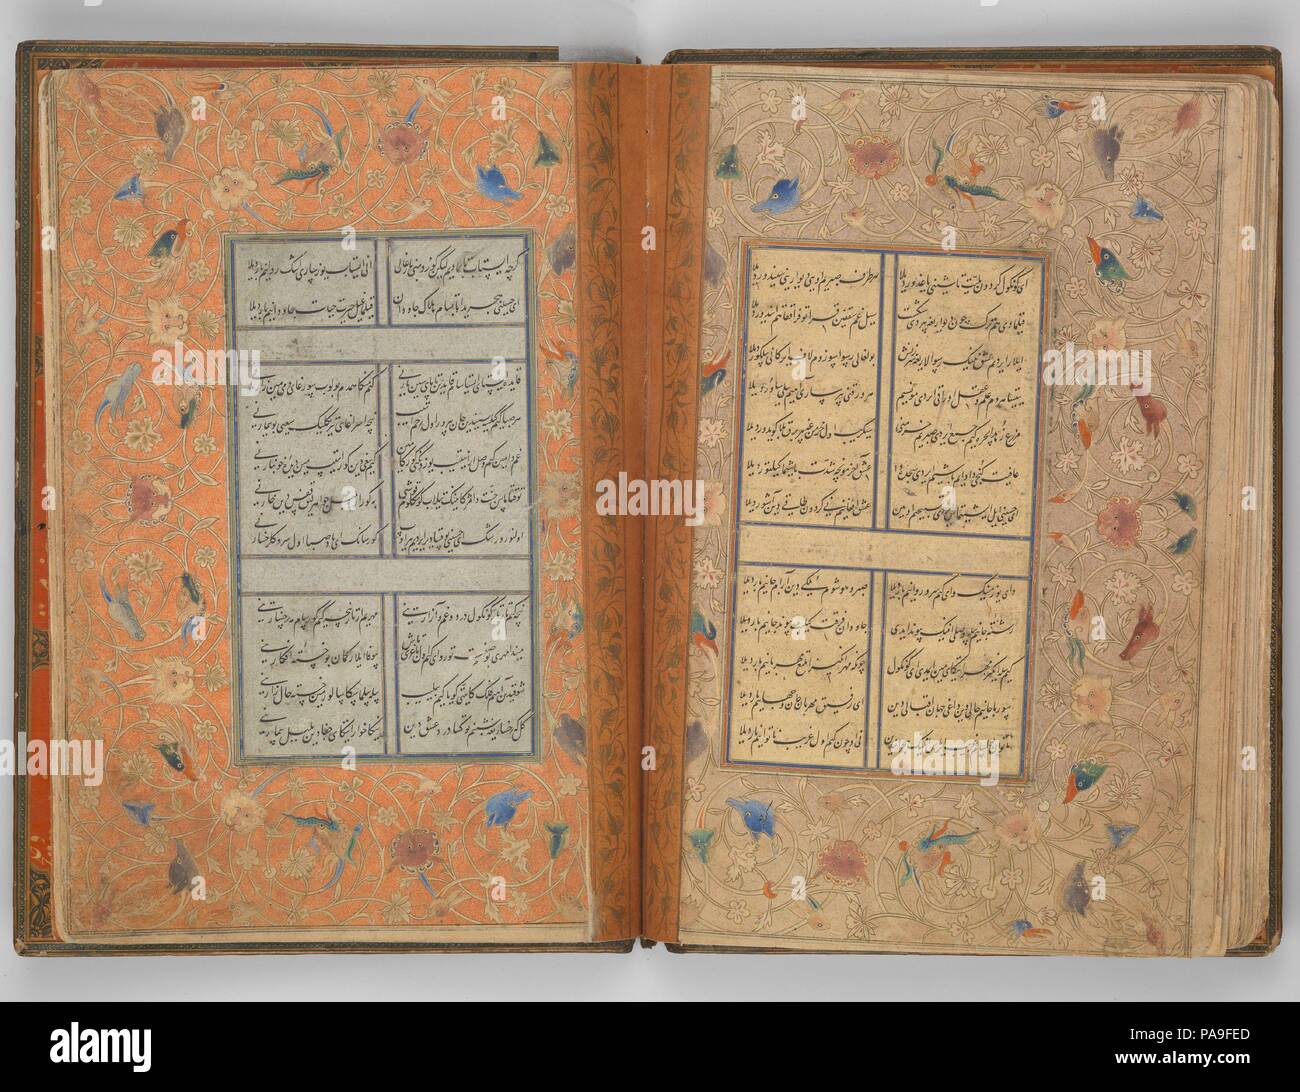 Divan du Sultan Husayn Baiqara. Calligraphe : Sultan Ali al-Mashhadi (actif fin 15ème-début du 16e siècle). Dimensions : 10 1/2 x 7 1/4 in. (26.7 x 18.4cm). Date : du A.H 905/ A.D.1500. Ce manuscrit richement décoré comprend une collection (divan) de la poésie composée par la fin du xve siècle Sultan Timuride Husain Baiqara (r. 1470-1506) dans l'Est ou turc Djaghataï. Le texte calligraphié, écrit sur une variété de papiers colorés montés dans des marges au pochoir et peint, a été copiée par l'un des calligraphes favorisée du Sultan Husain - Sultan Ali Mashhadi. Museum Banque D'Images